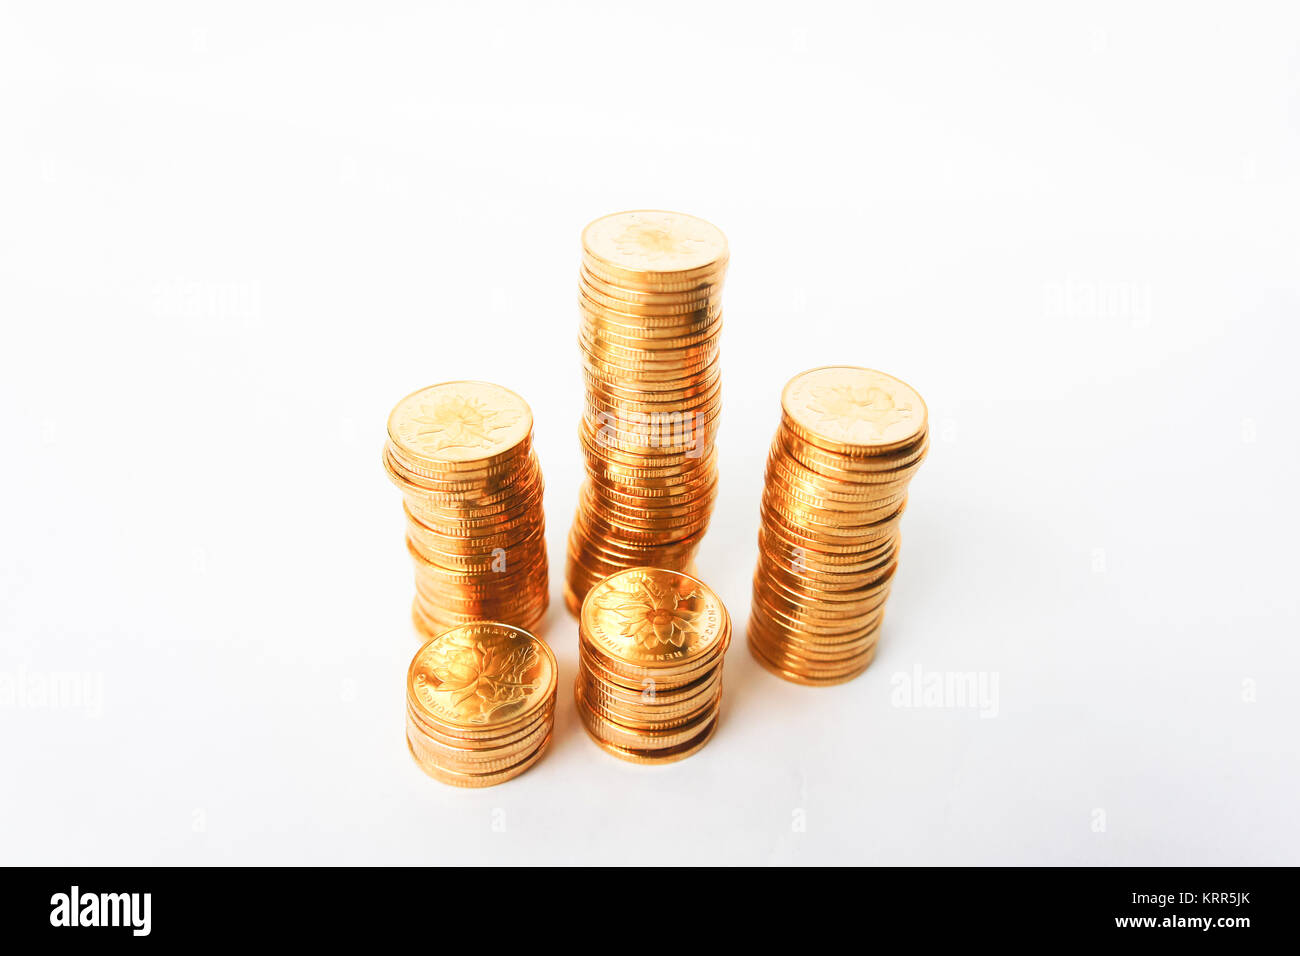 golden coins Stock Photo